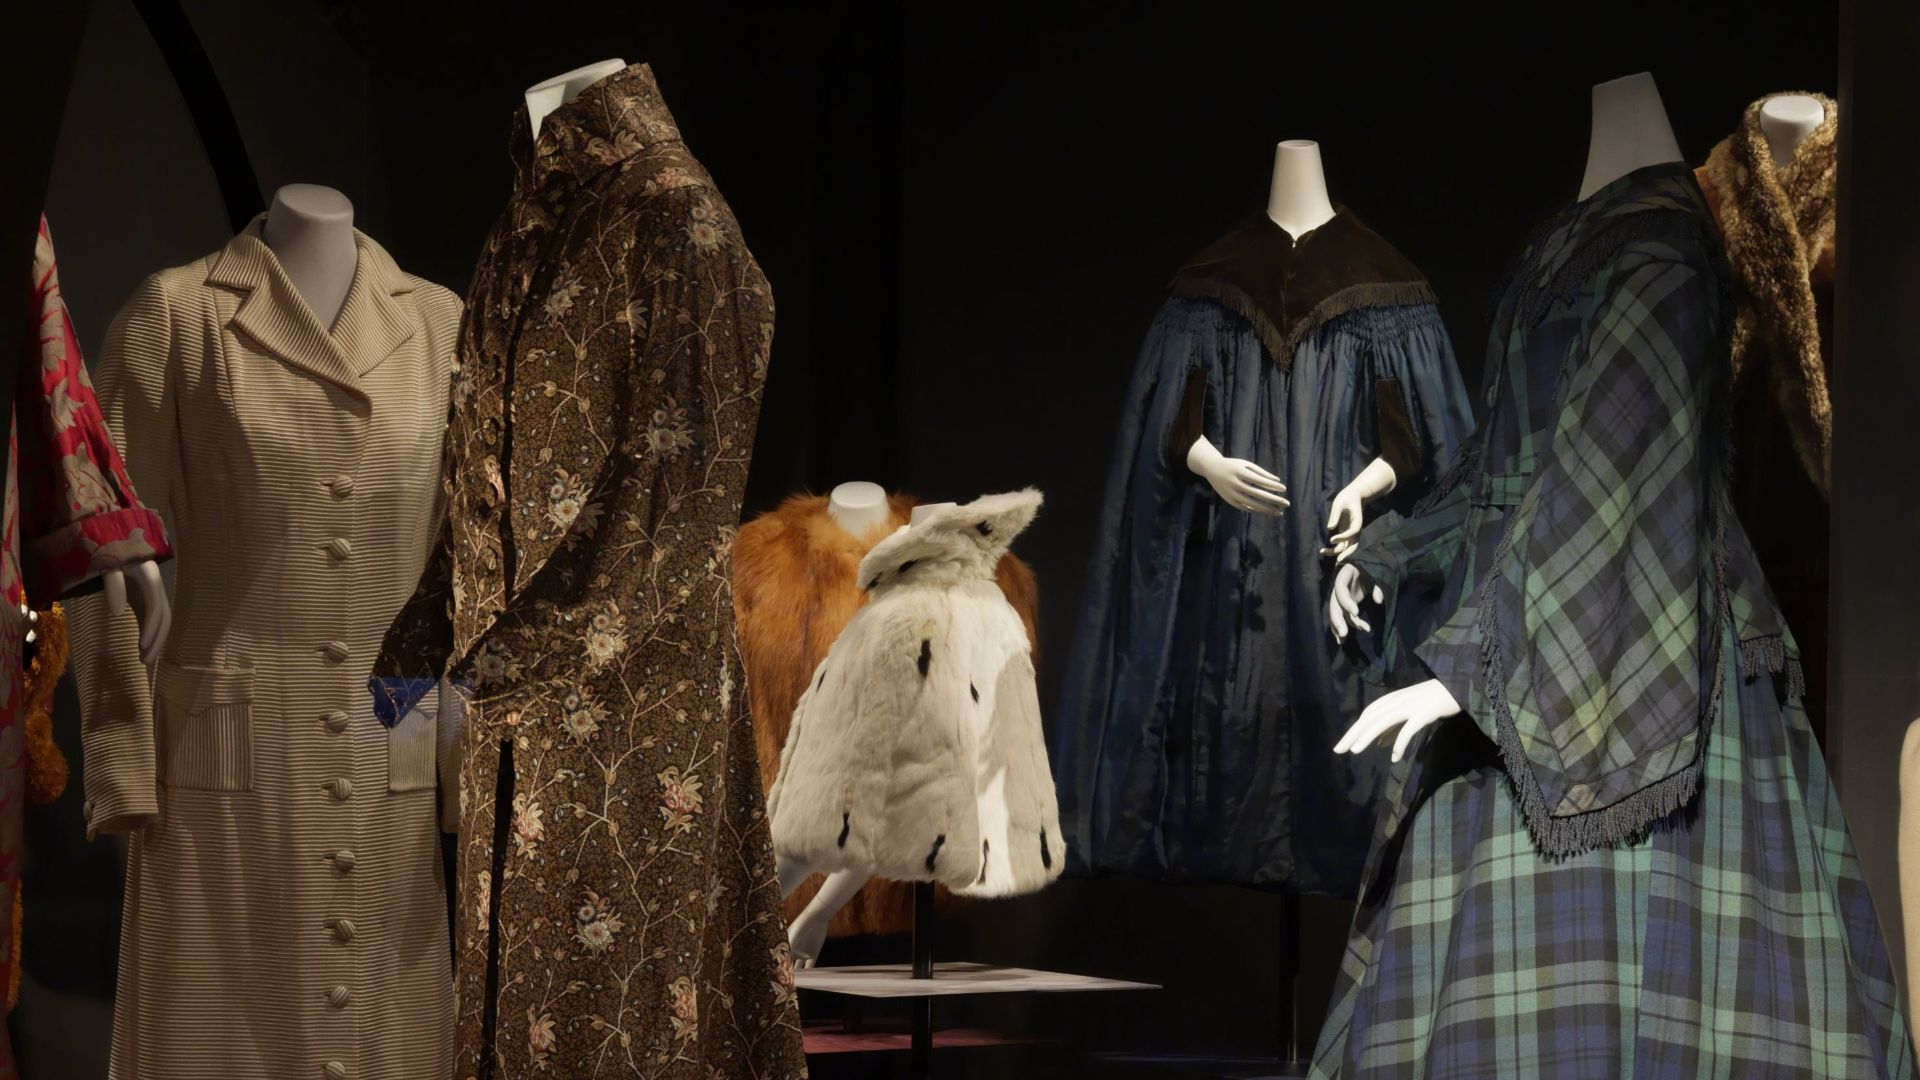 Tentoonstelling Jas aan!: opstelling van jassen en mantels in de kostuumvitrine